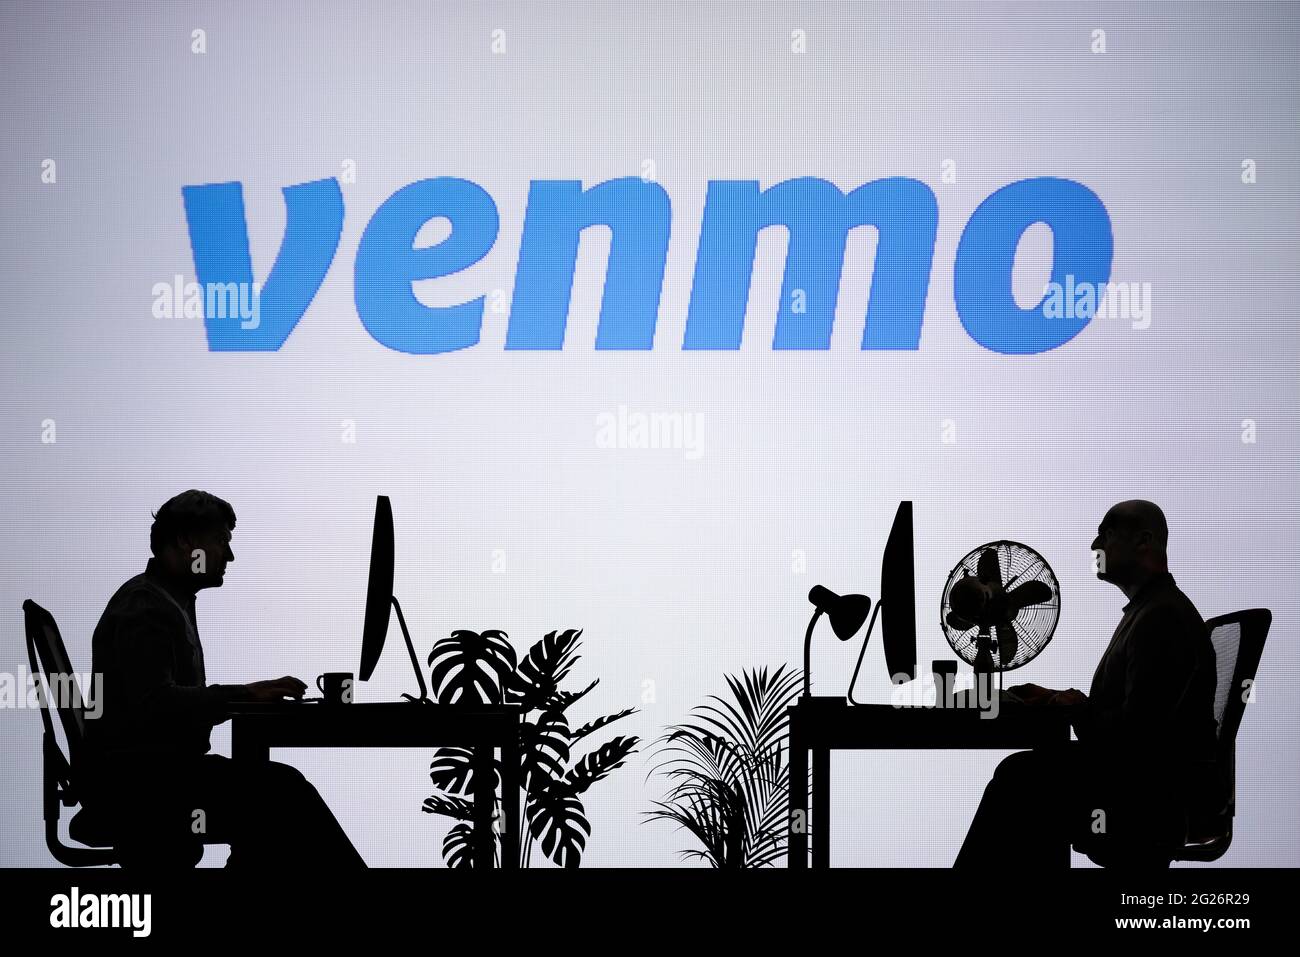 Le logo Venmo est visible sur un écran LED en arrière-plan tandis que deux personnes silhouetées travaillent dans un environnement de bureau (usage éditorial uniquement) Banque D'Images